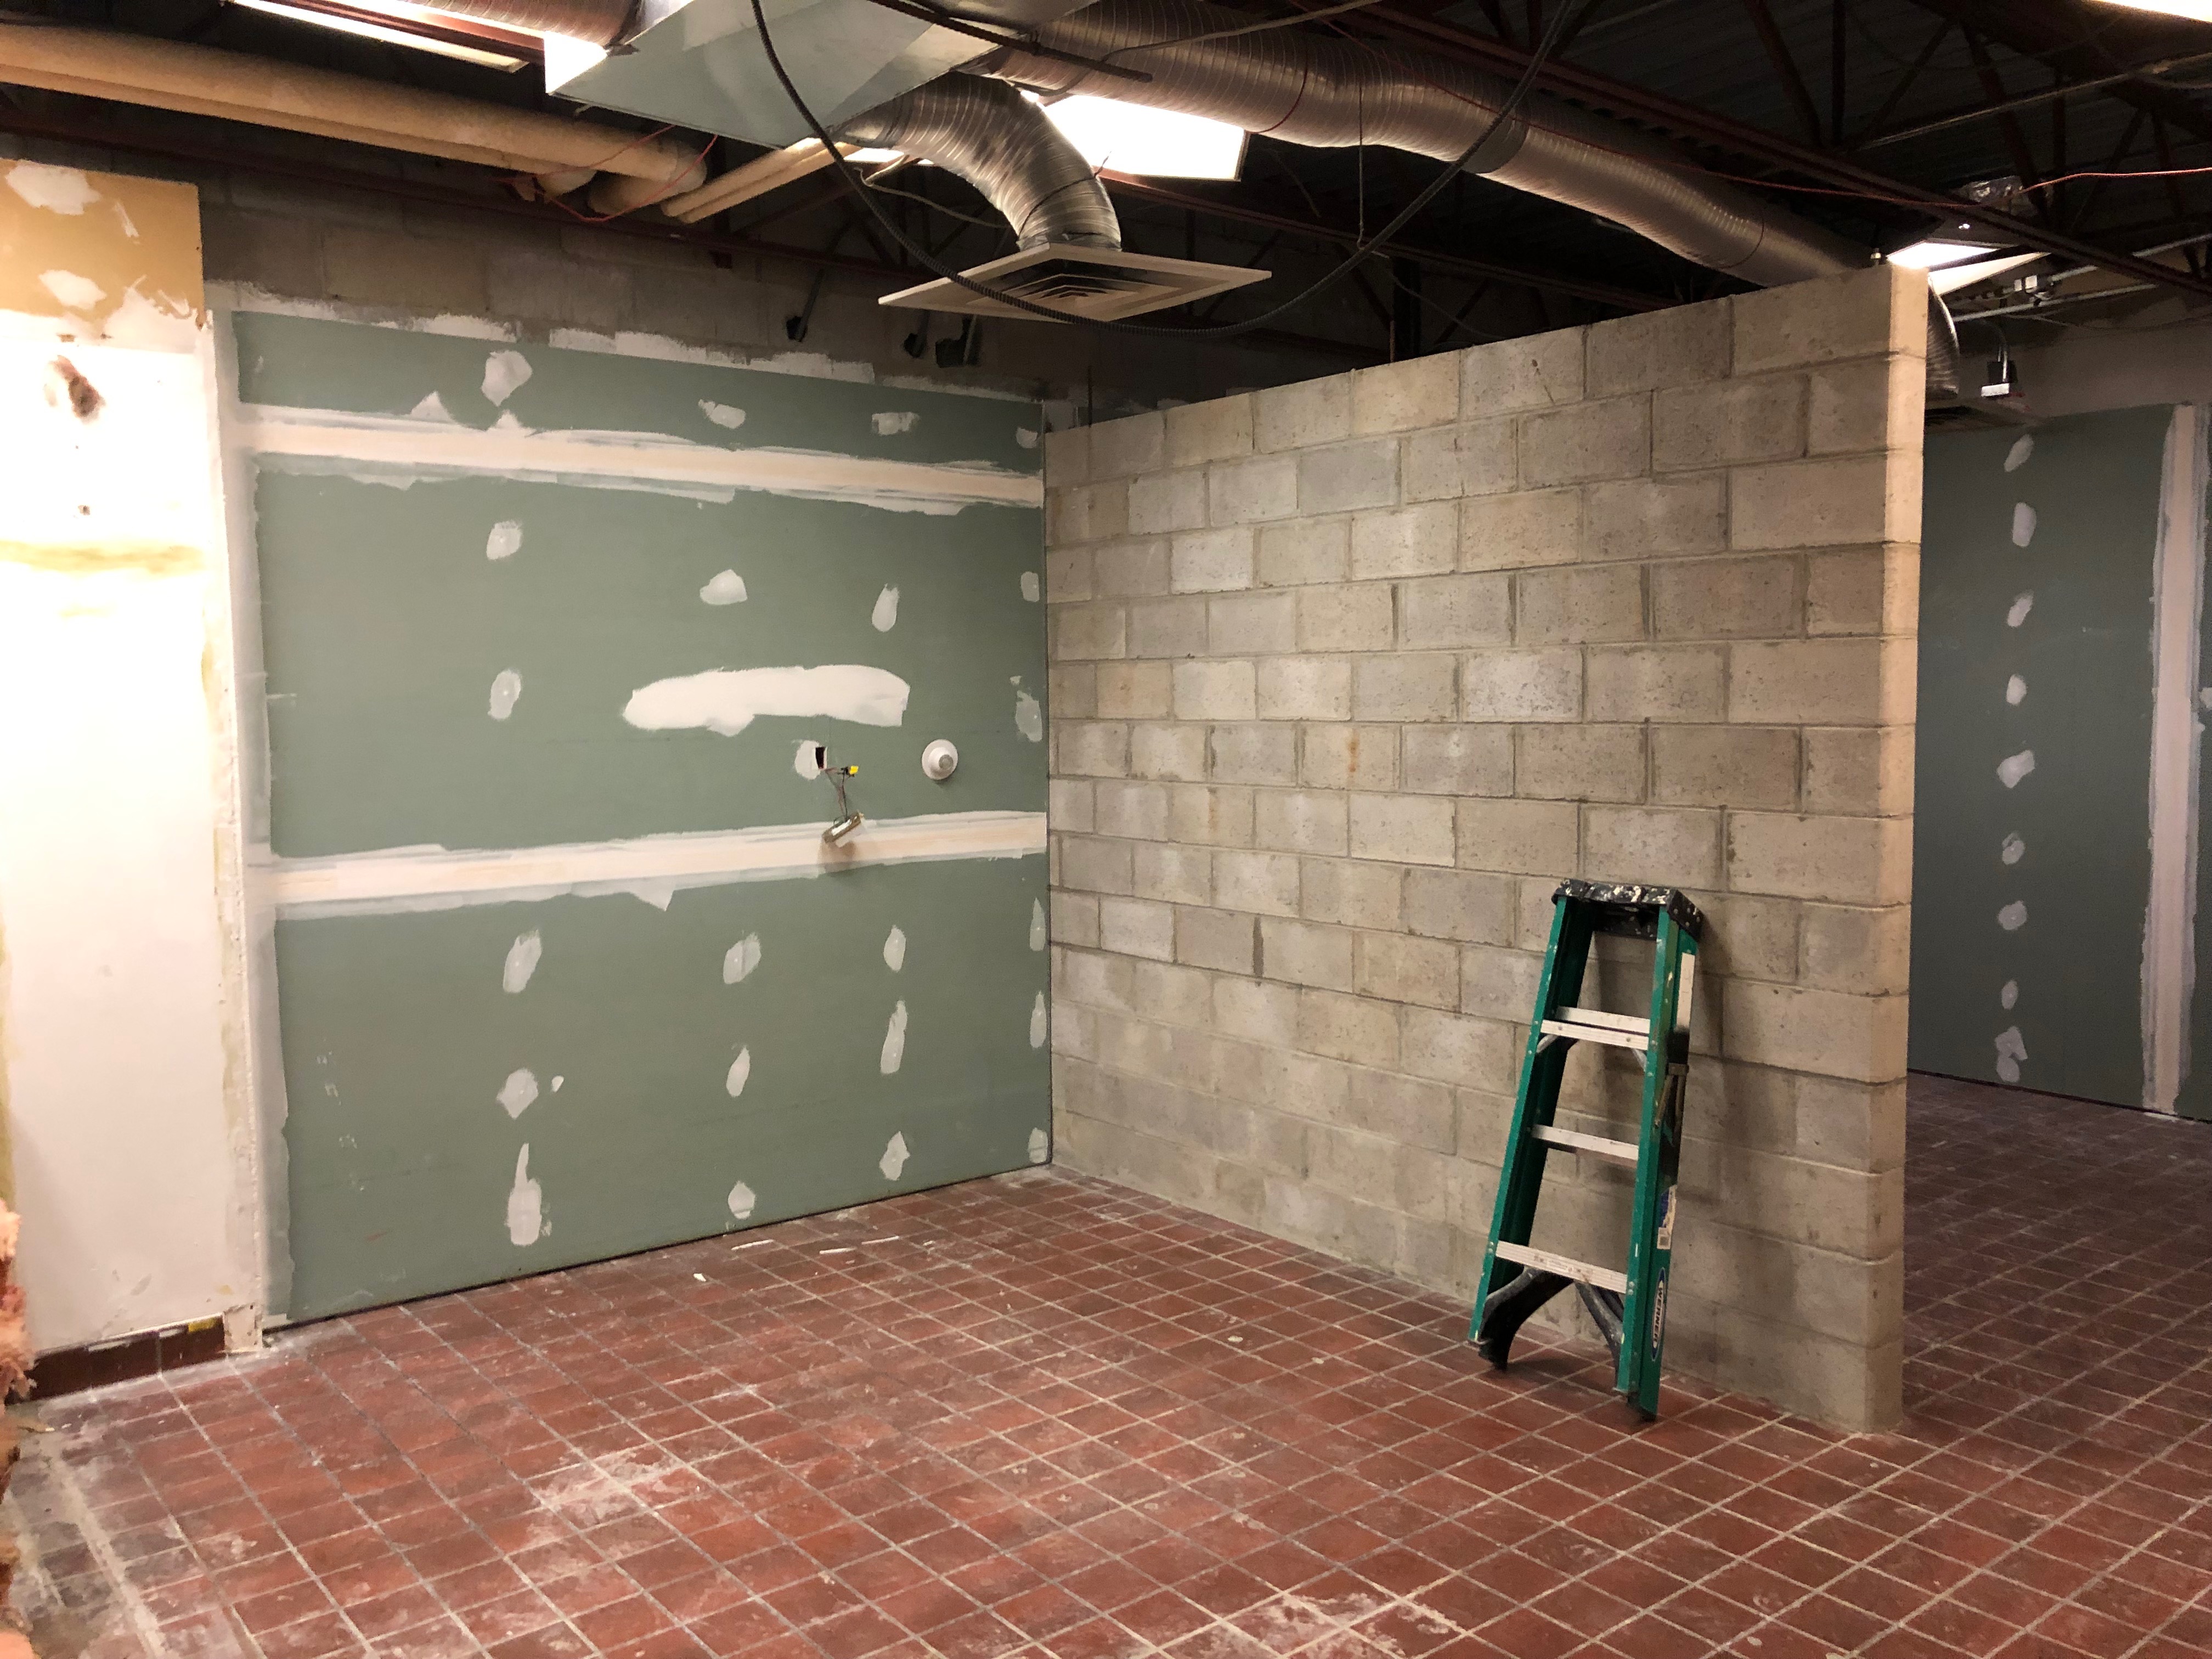 Locker Room Renovation Progress